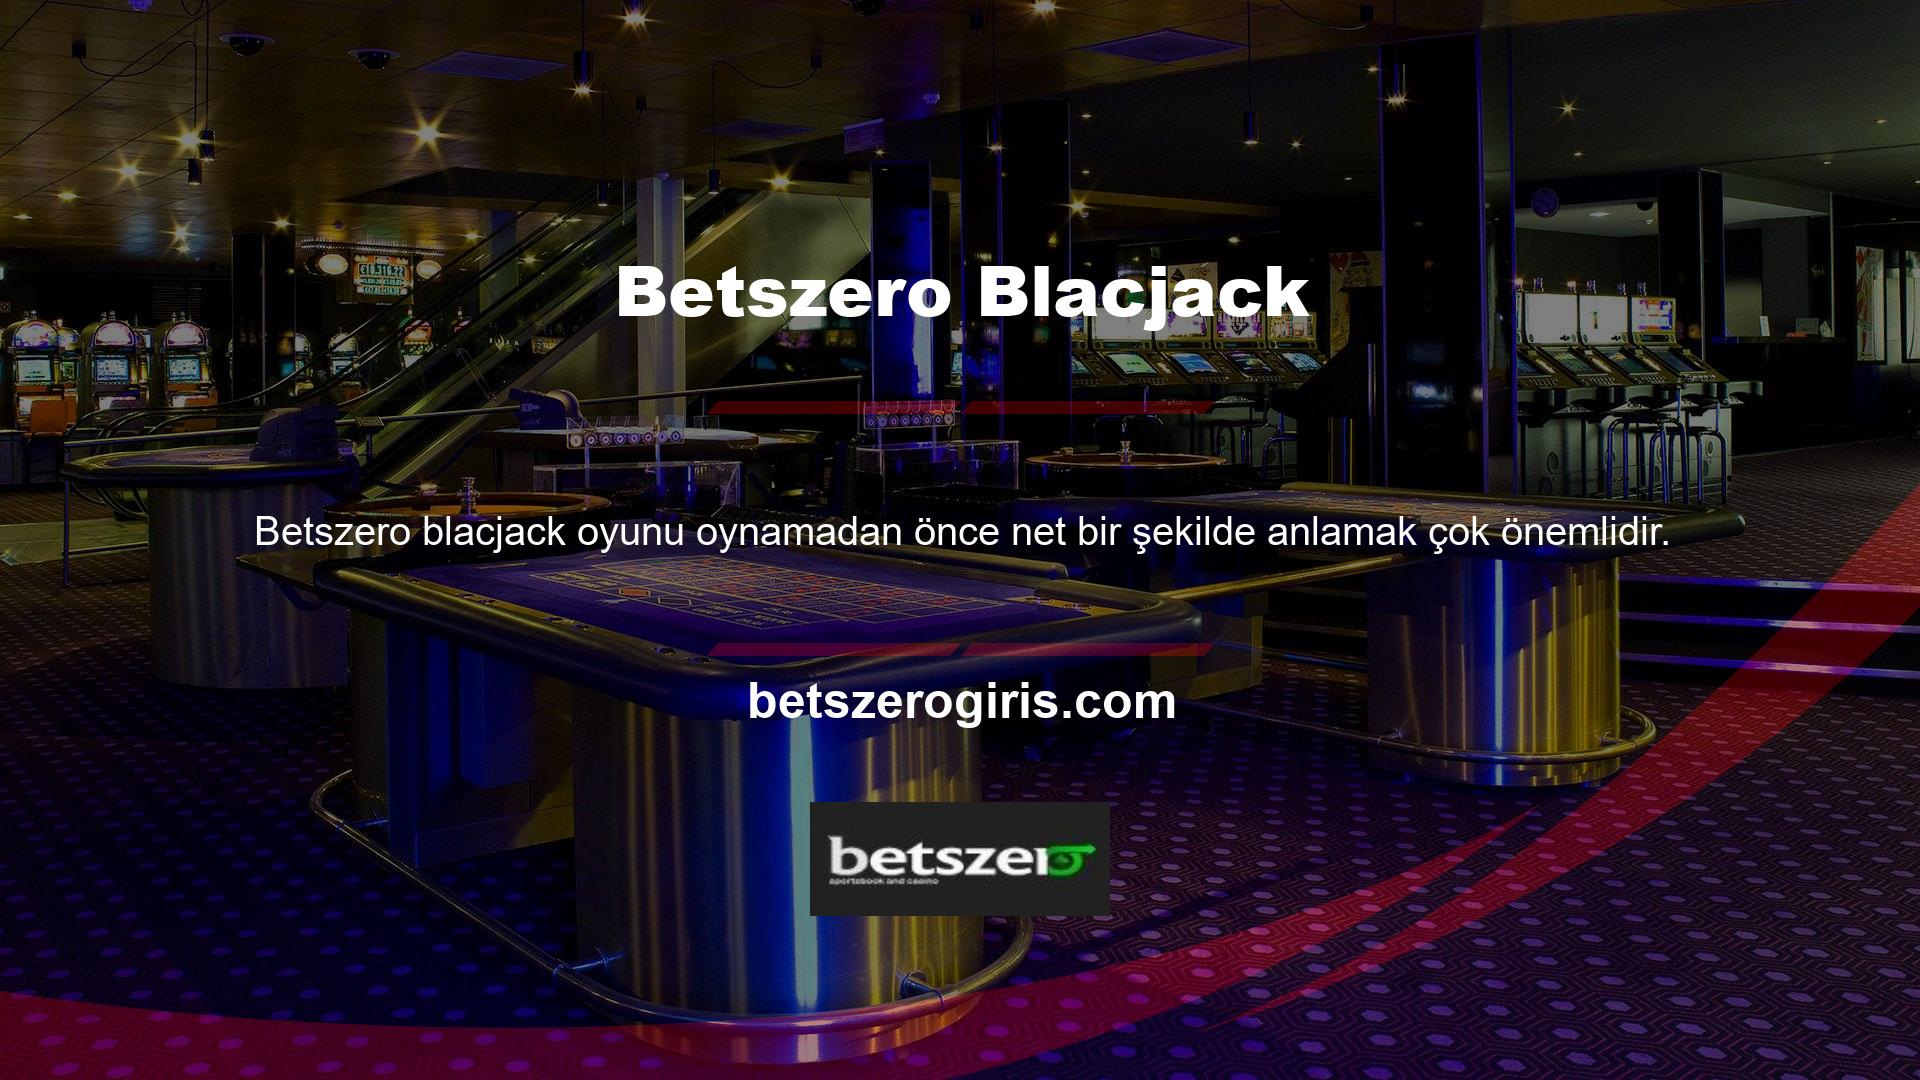 Çoğu farklı kural ve stratejilere sahip birçok çevrimiçi blackjack oyunu vardır